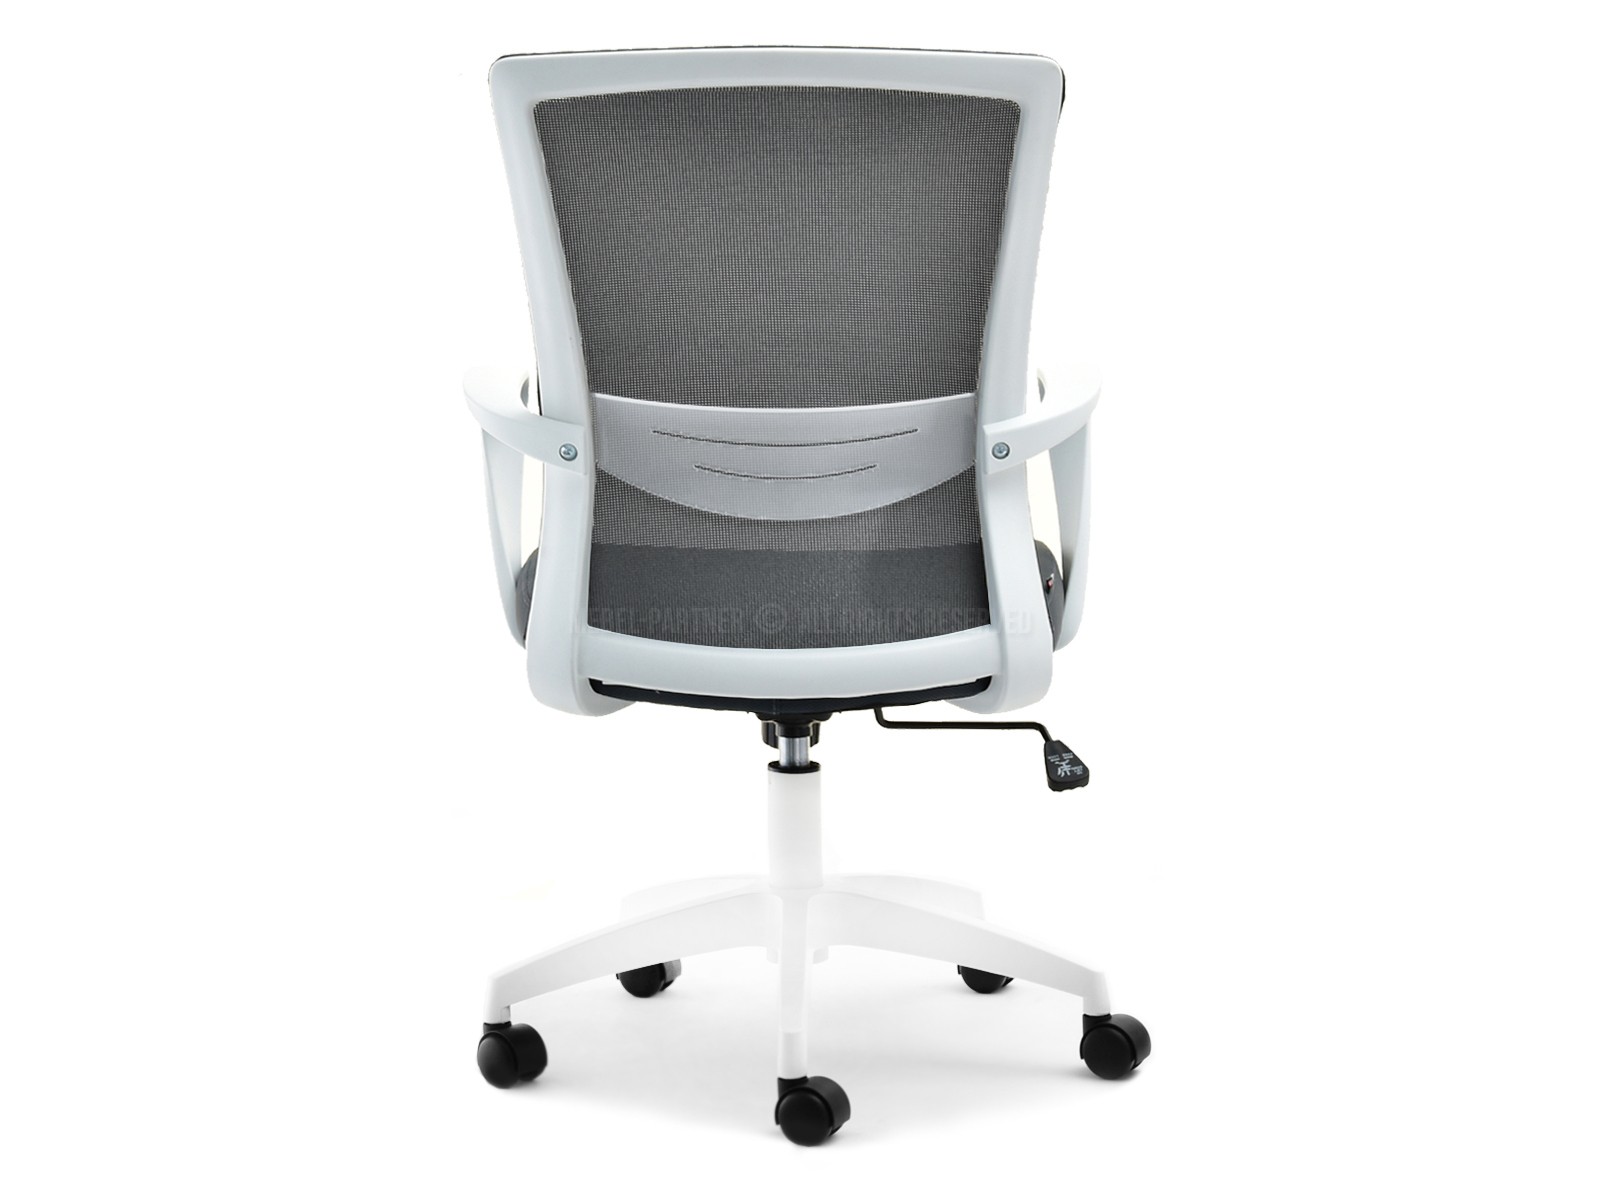 Fotel biurowy ergonomiczny JARED GRAFITOWY BIAŁA PODSTAWA - mobilna podstawa